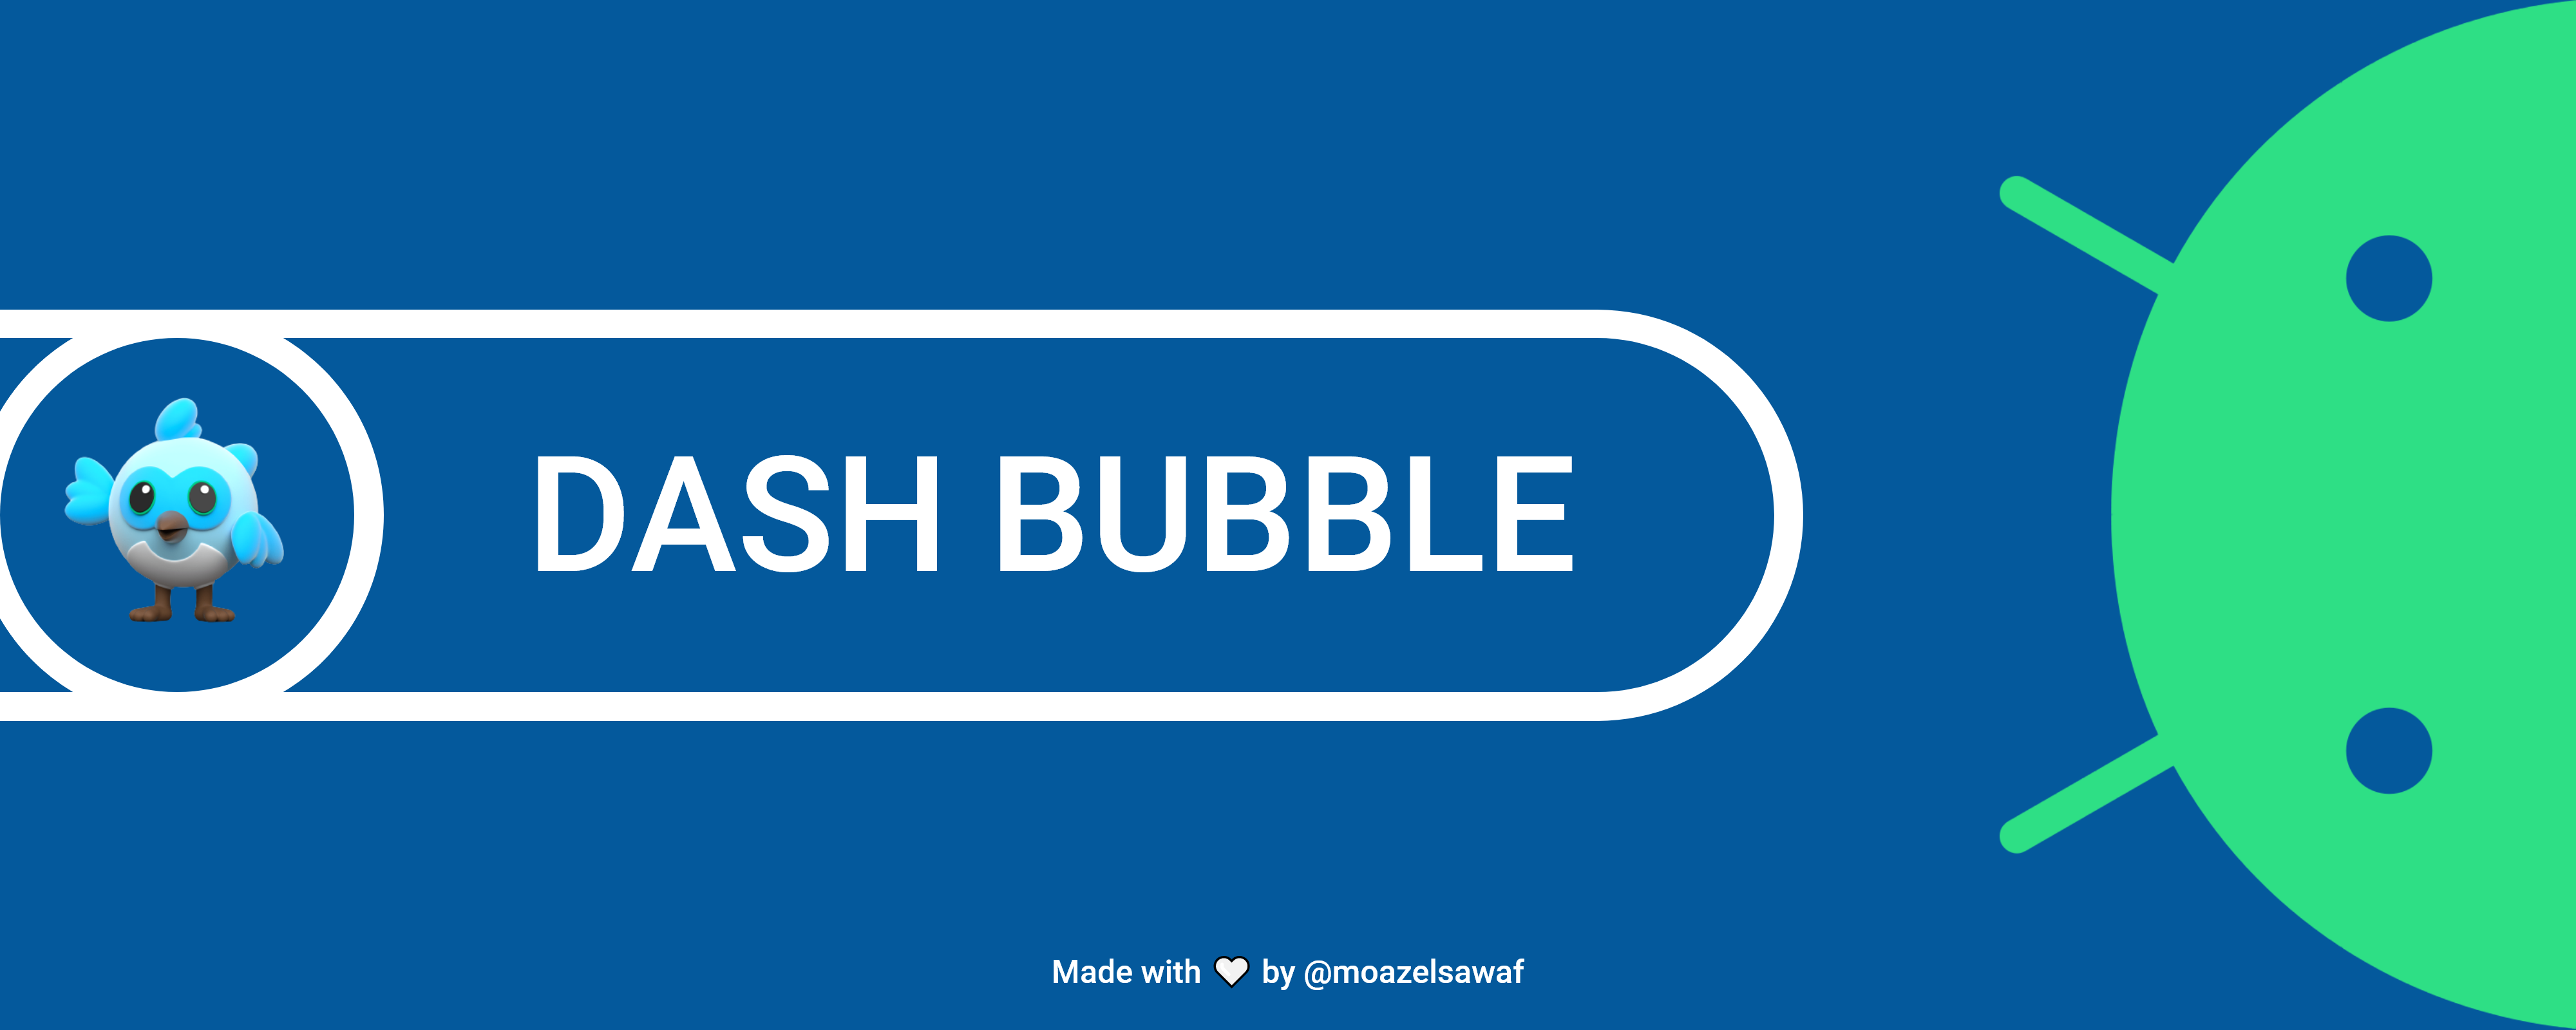 Dash Bubble Banner